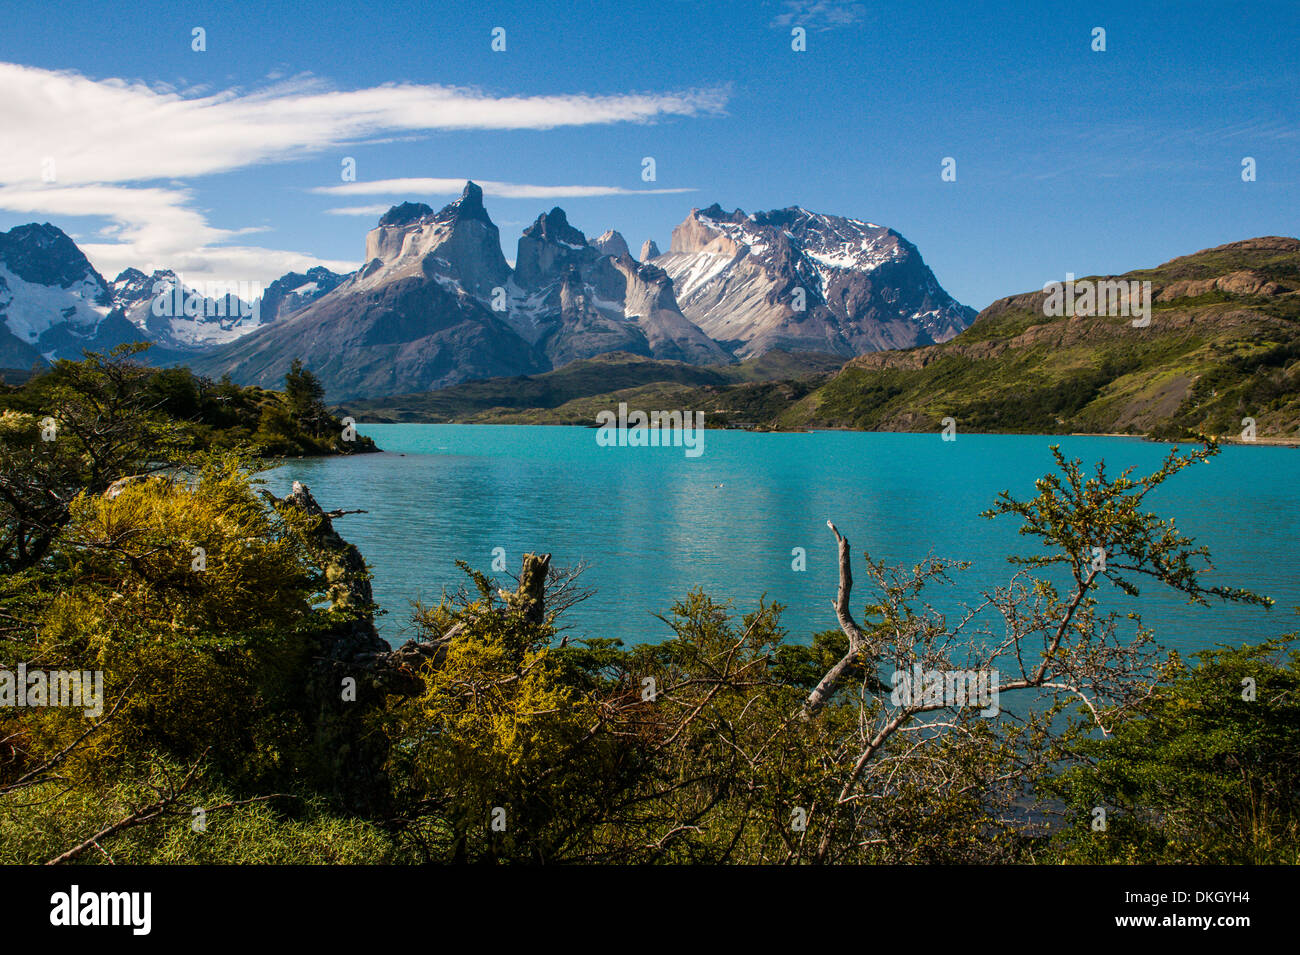 Le lac Pehoe dans le Parc National Torres del Paine, Patagonie, Chili, Amérique du Sud Banque D'Images